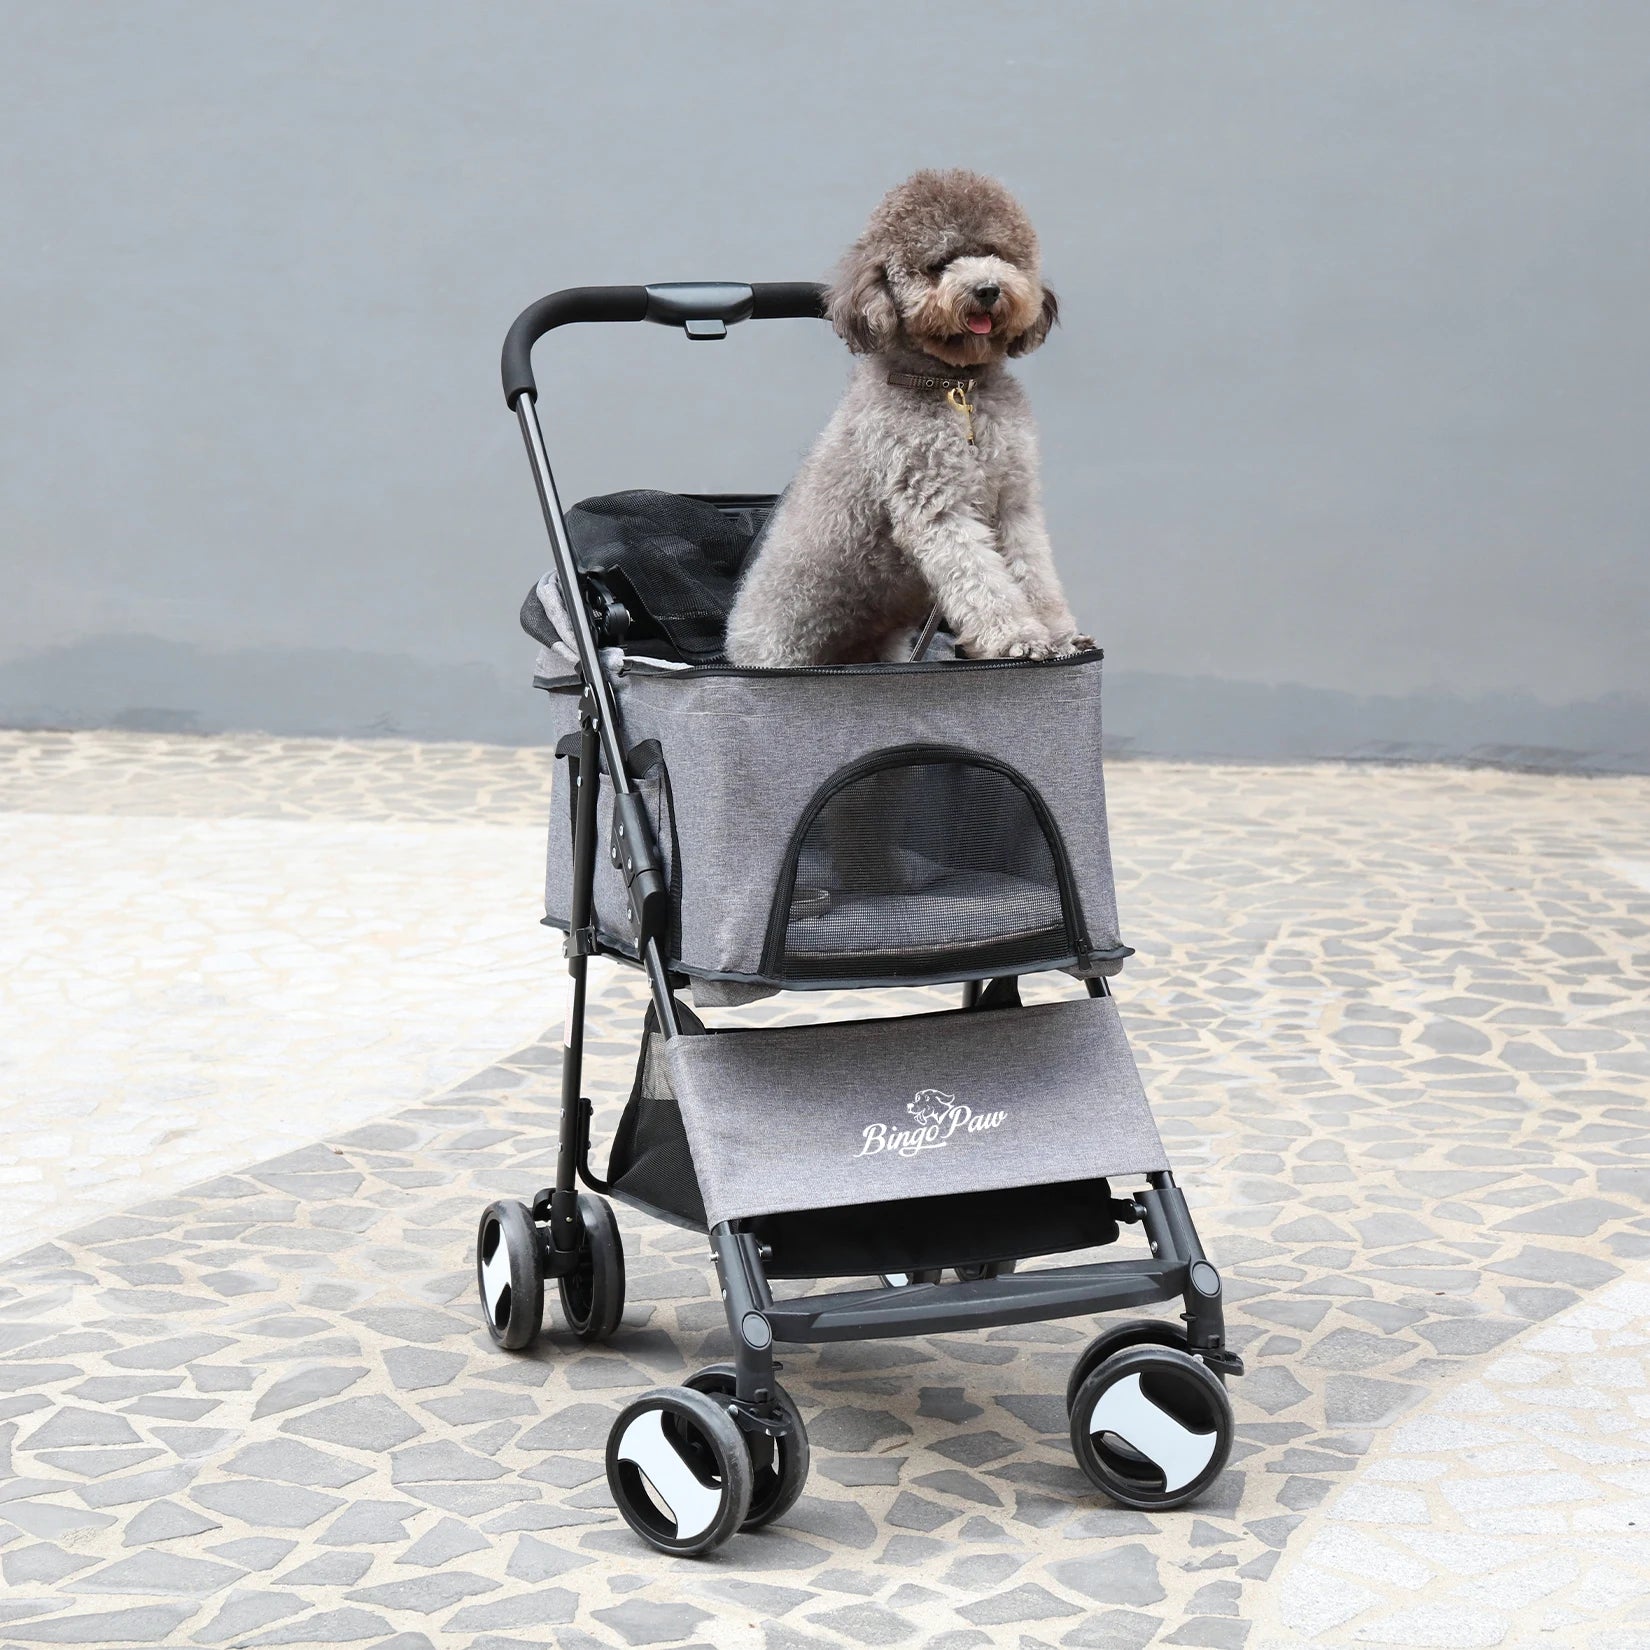 Large Pet Stroller Pram Dog Carrier Trailer Stroller Travel Walk Carrier with Detachable Carrier Cart  Load 30kg